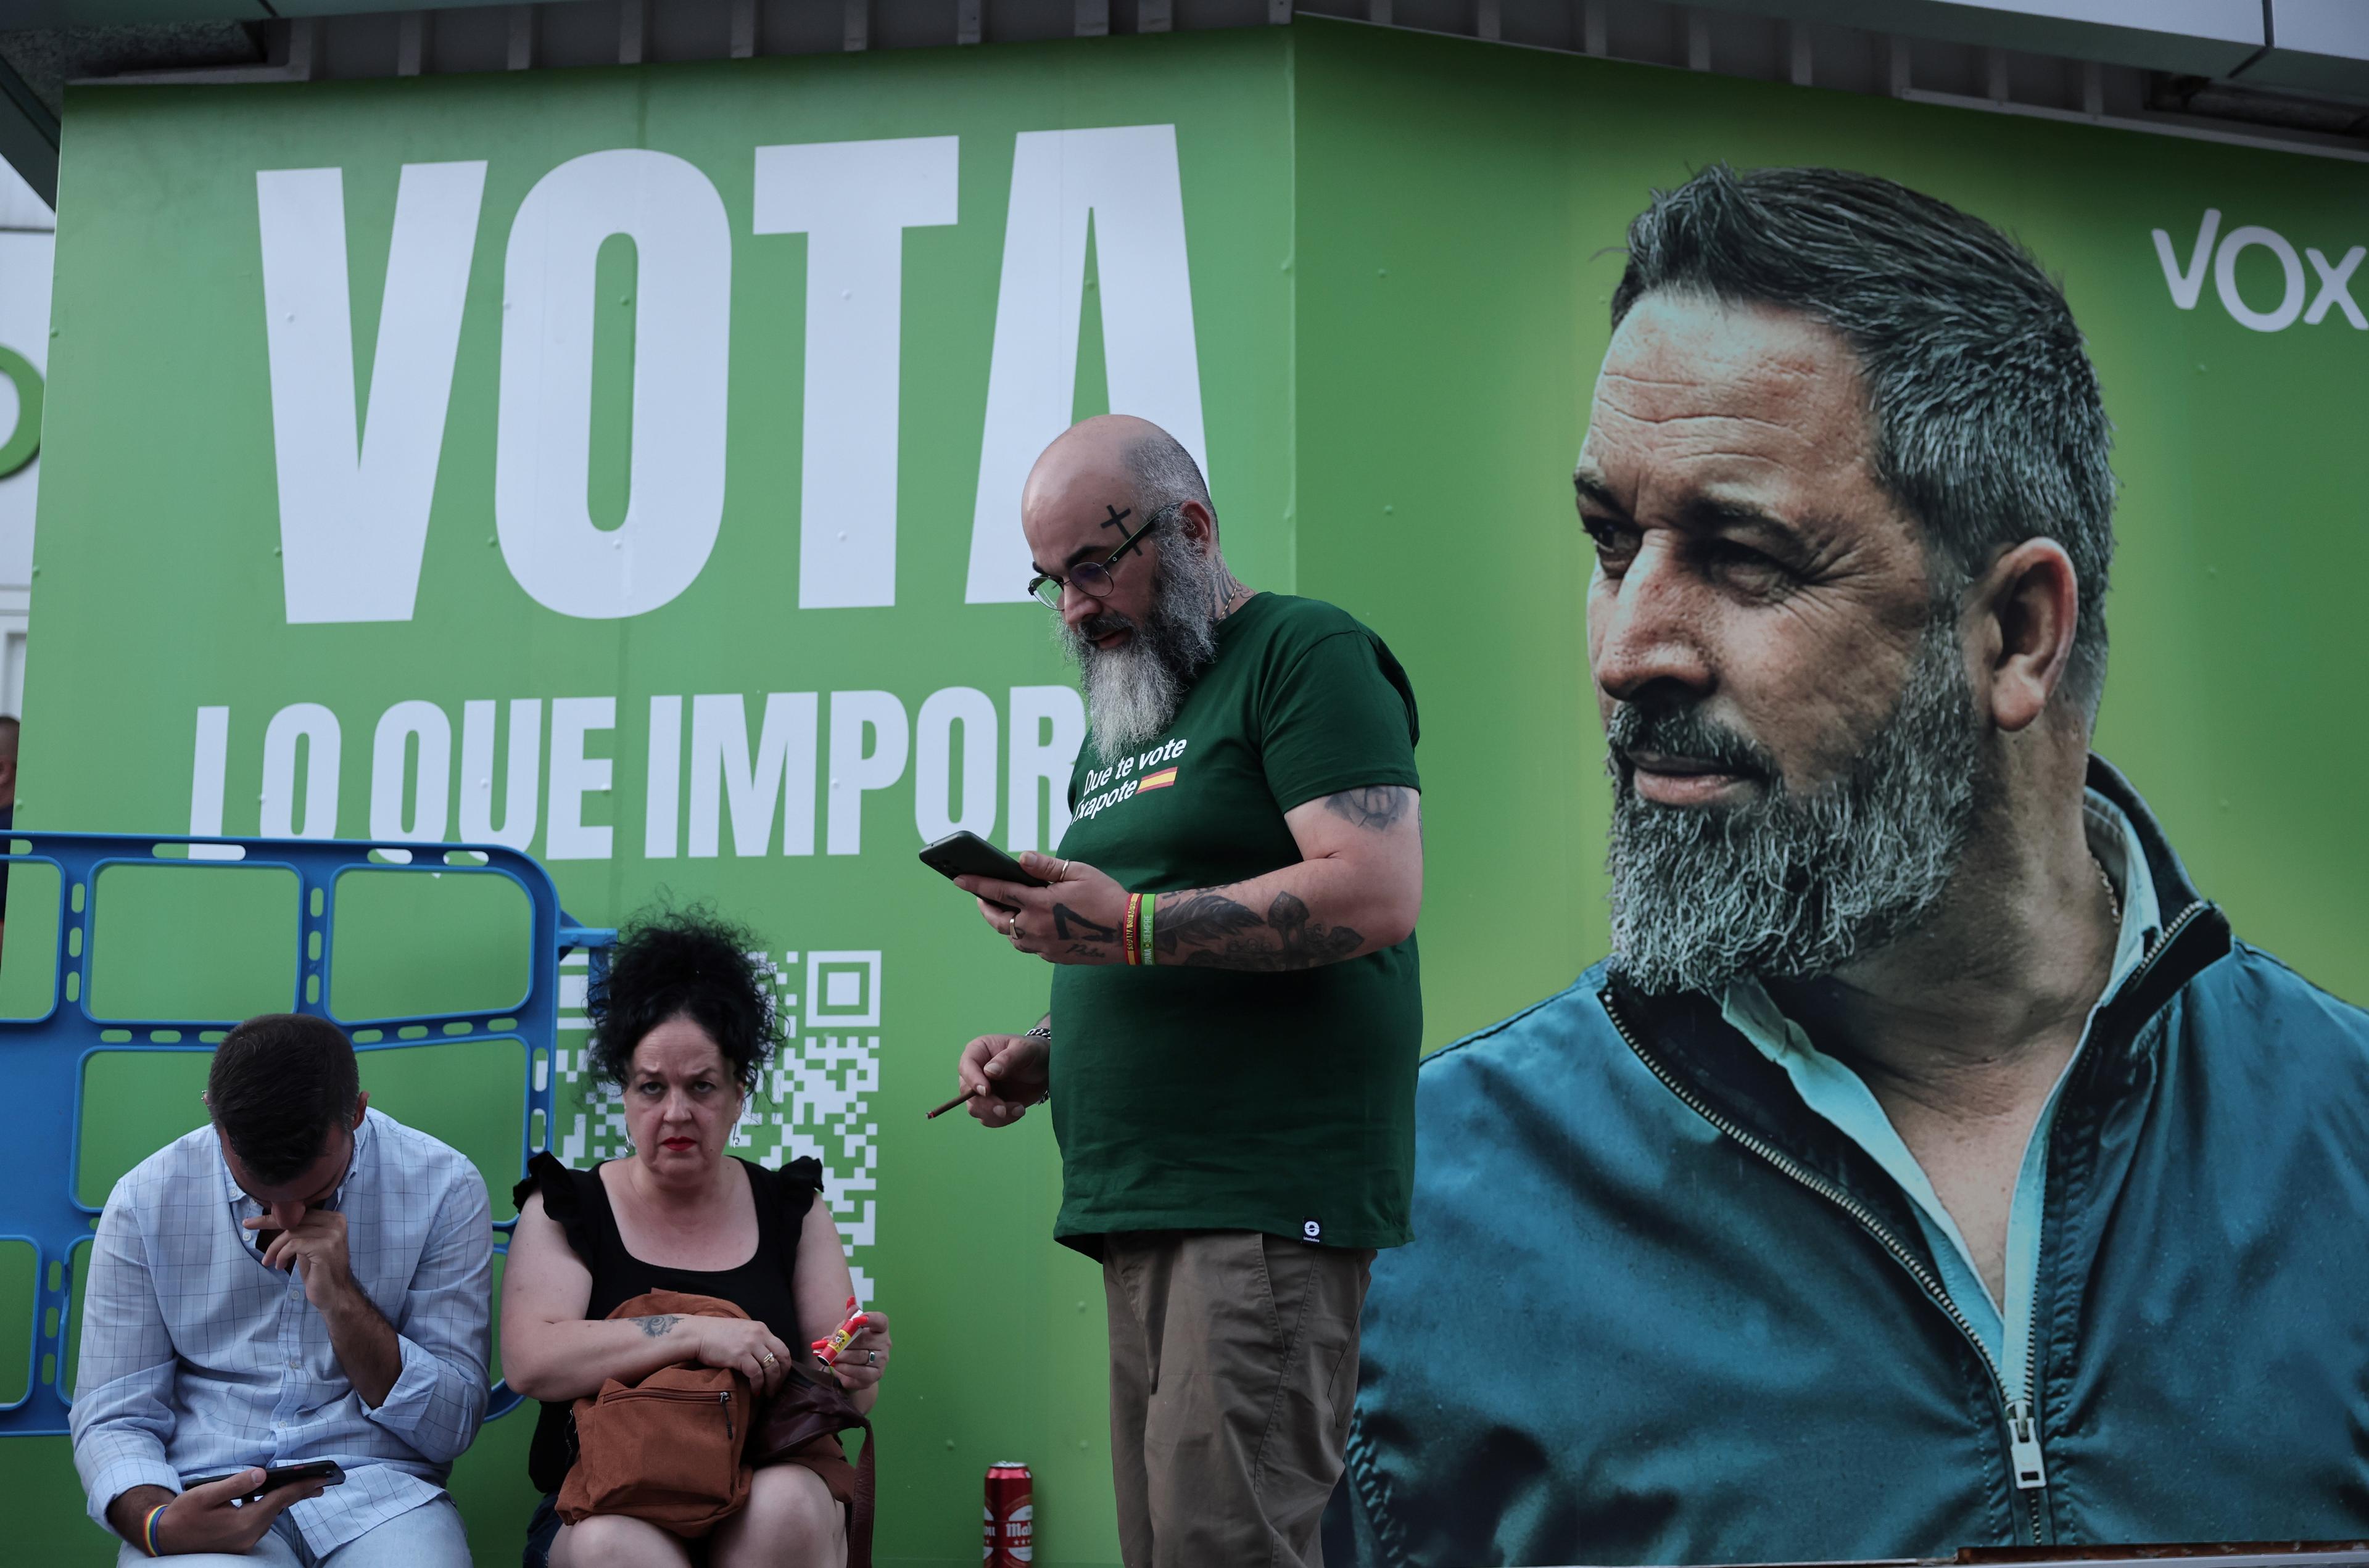 Ludzie na tle zielonego plakatu z brodatym mężczyzną